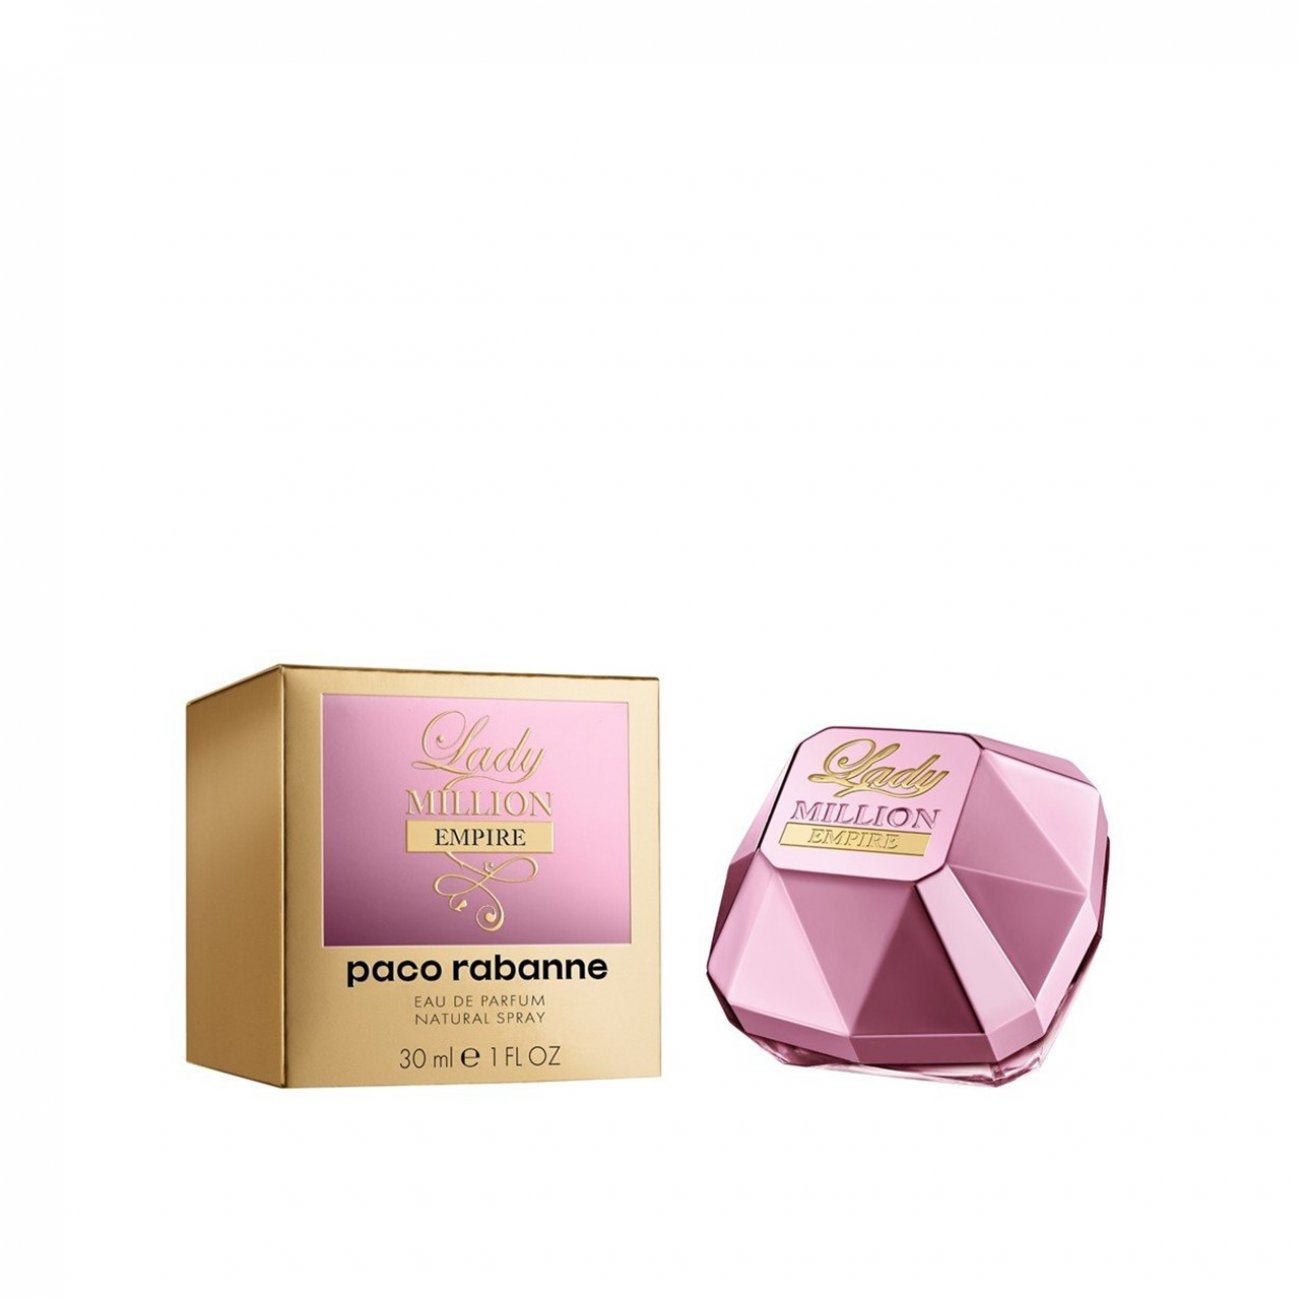 Grijp Verenigde Staten van Amerika Beschrijven Buy Paco Rabanne Lady Million Empire Eau de Parfum · USA